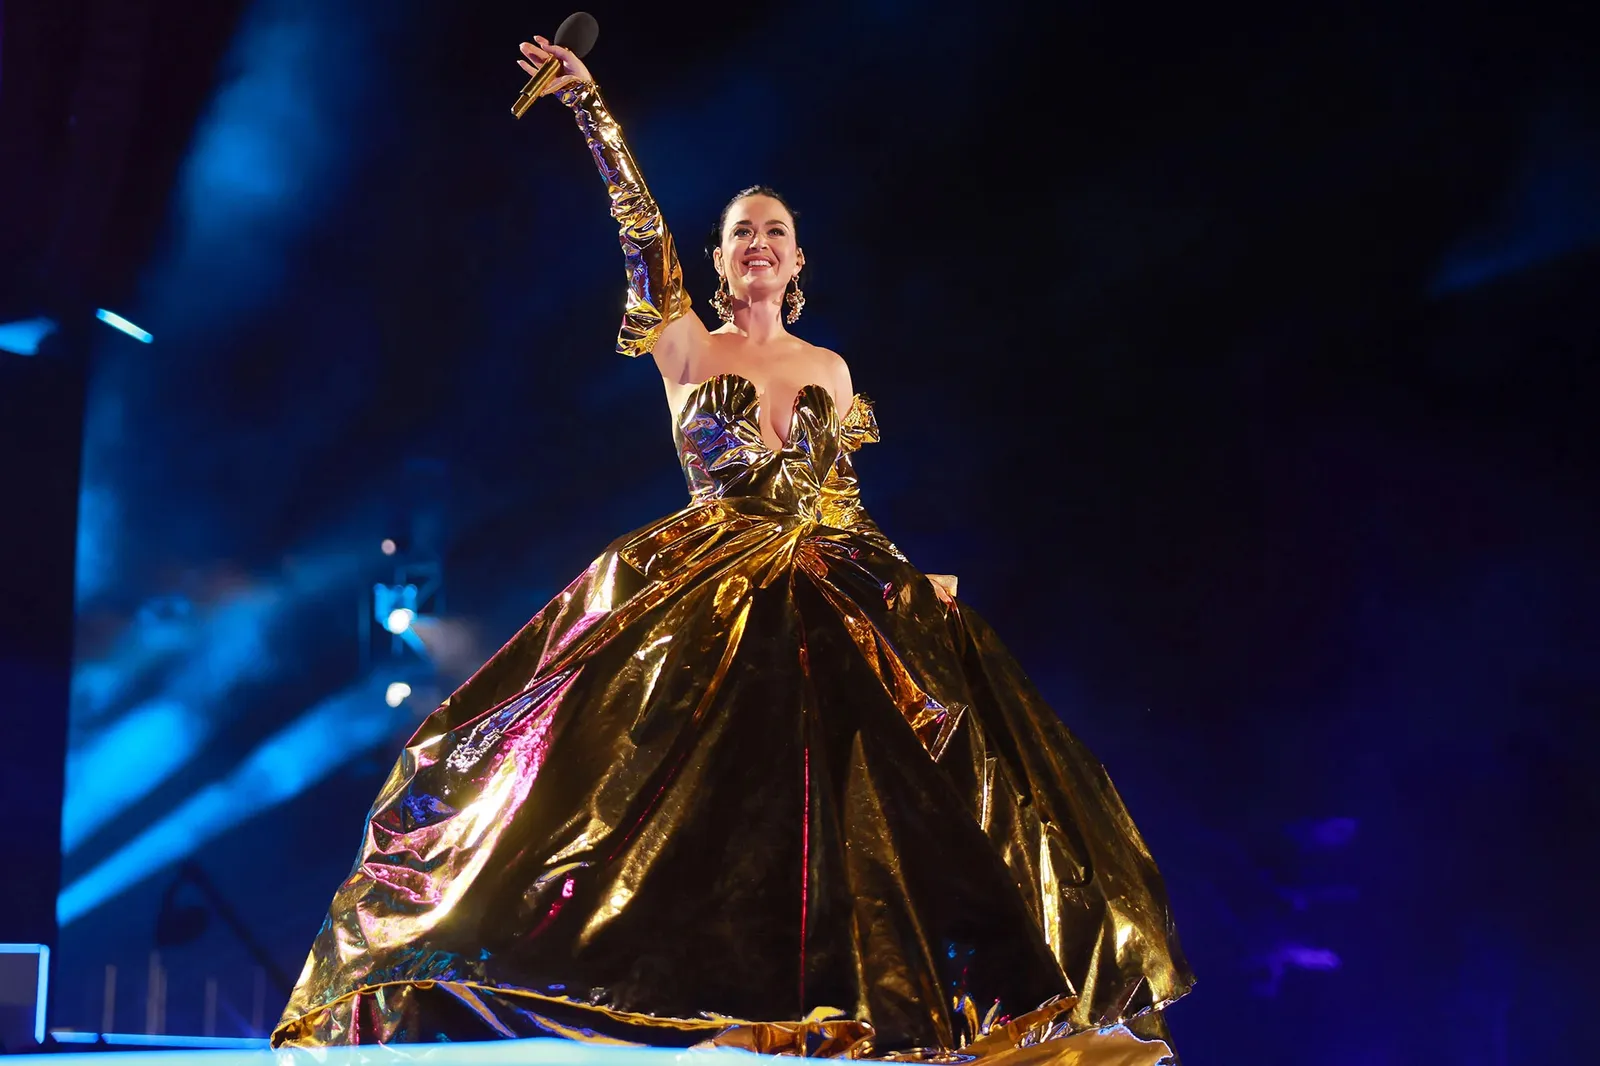 Penampilan Katy Perry di Upacara dan Konser Penobatan Raja Charles III